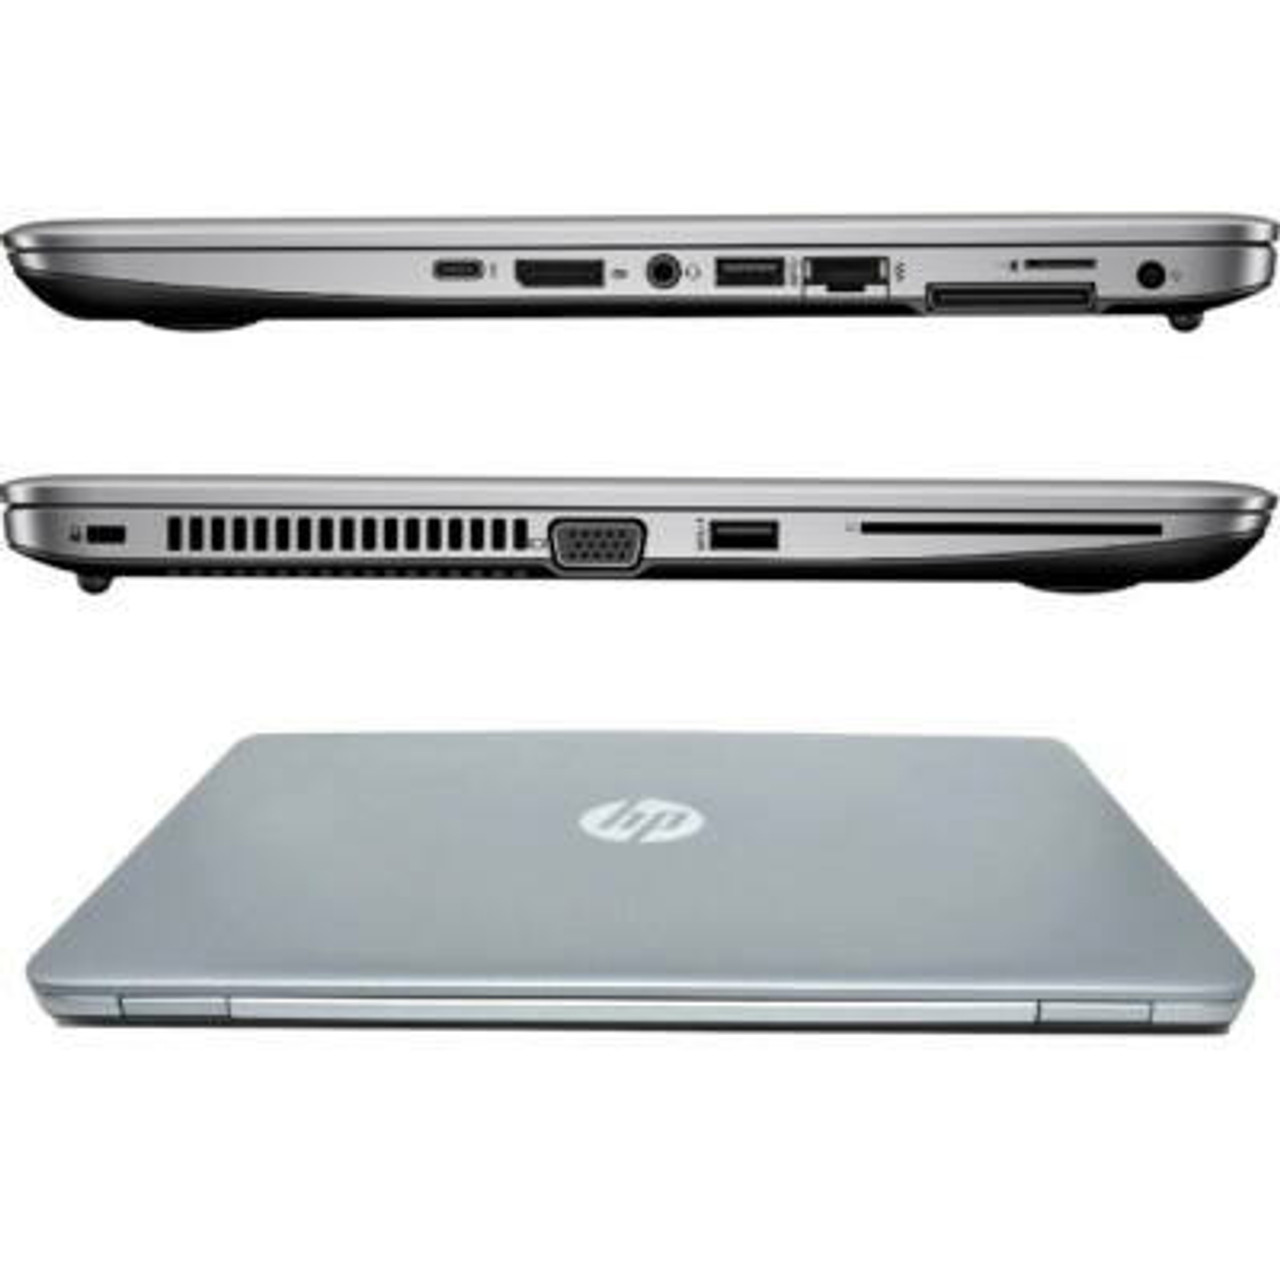 Hp EliteBook 840 G3 Refurbished Laptop